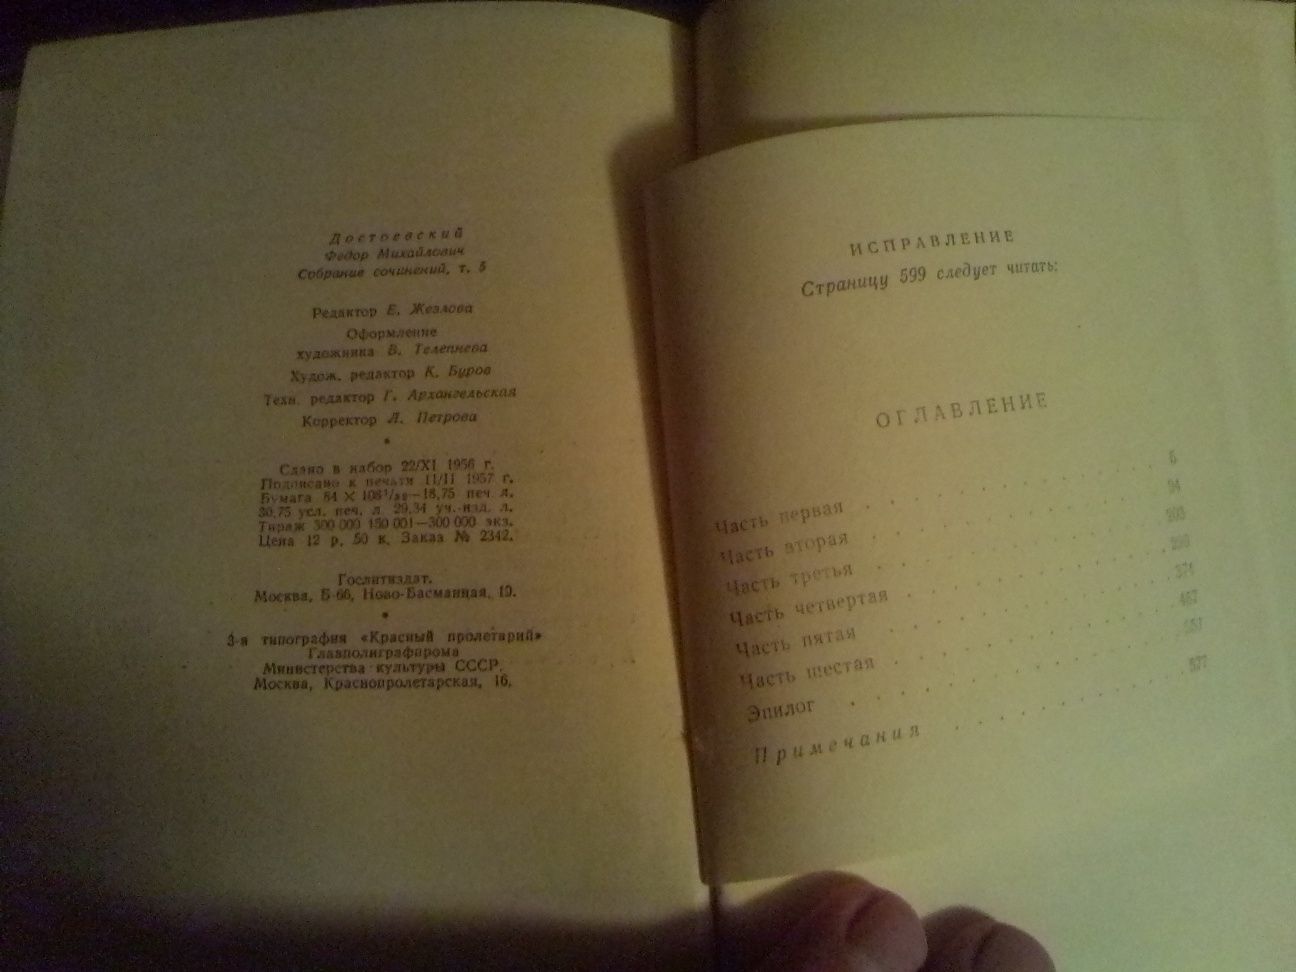 Книги Достоевского Ф.М в 10 томах и Гоголя Н.В в 5 томах издания 1951г